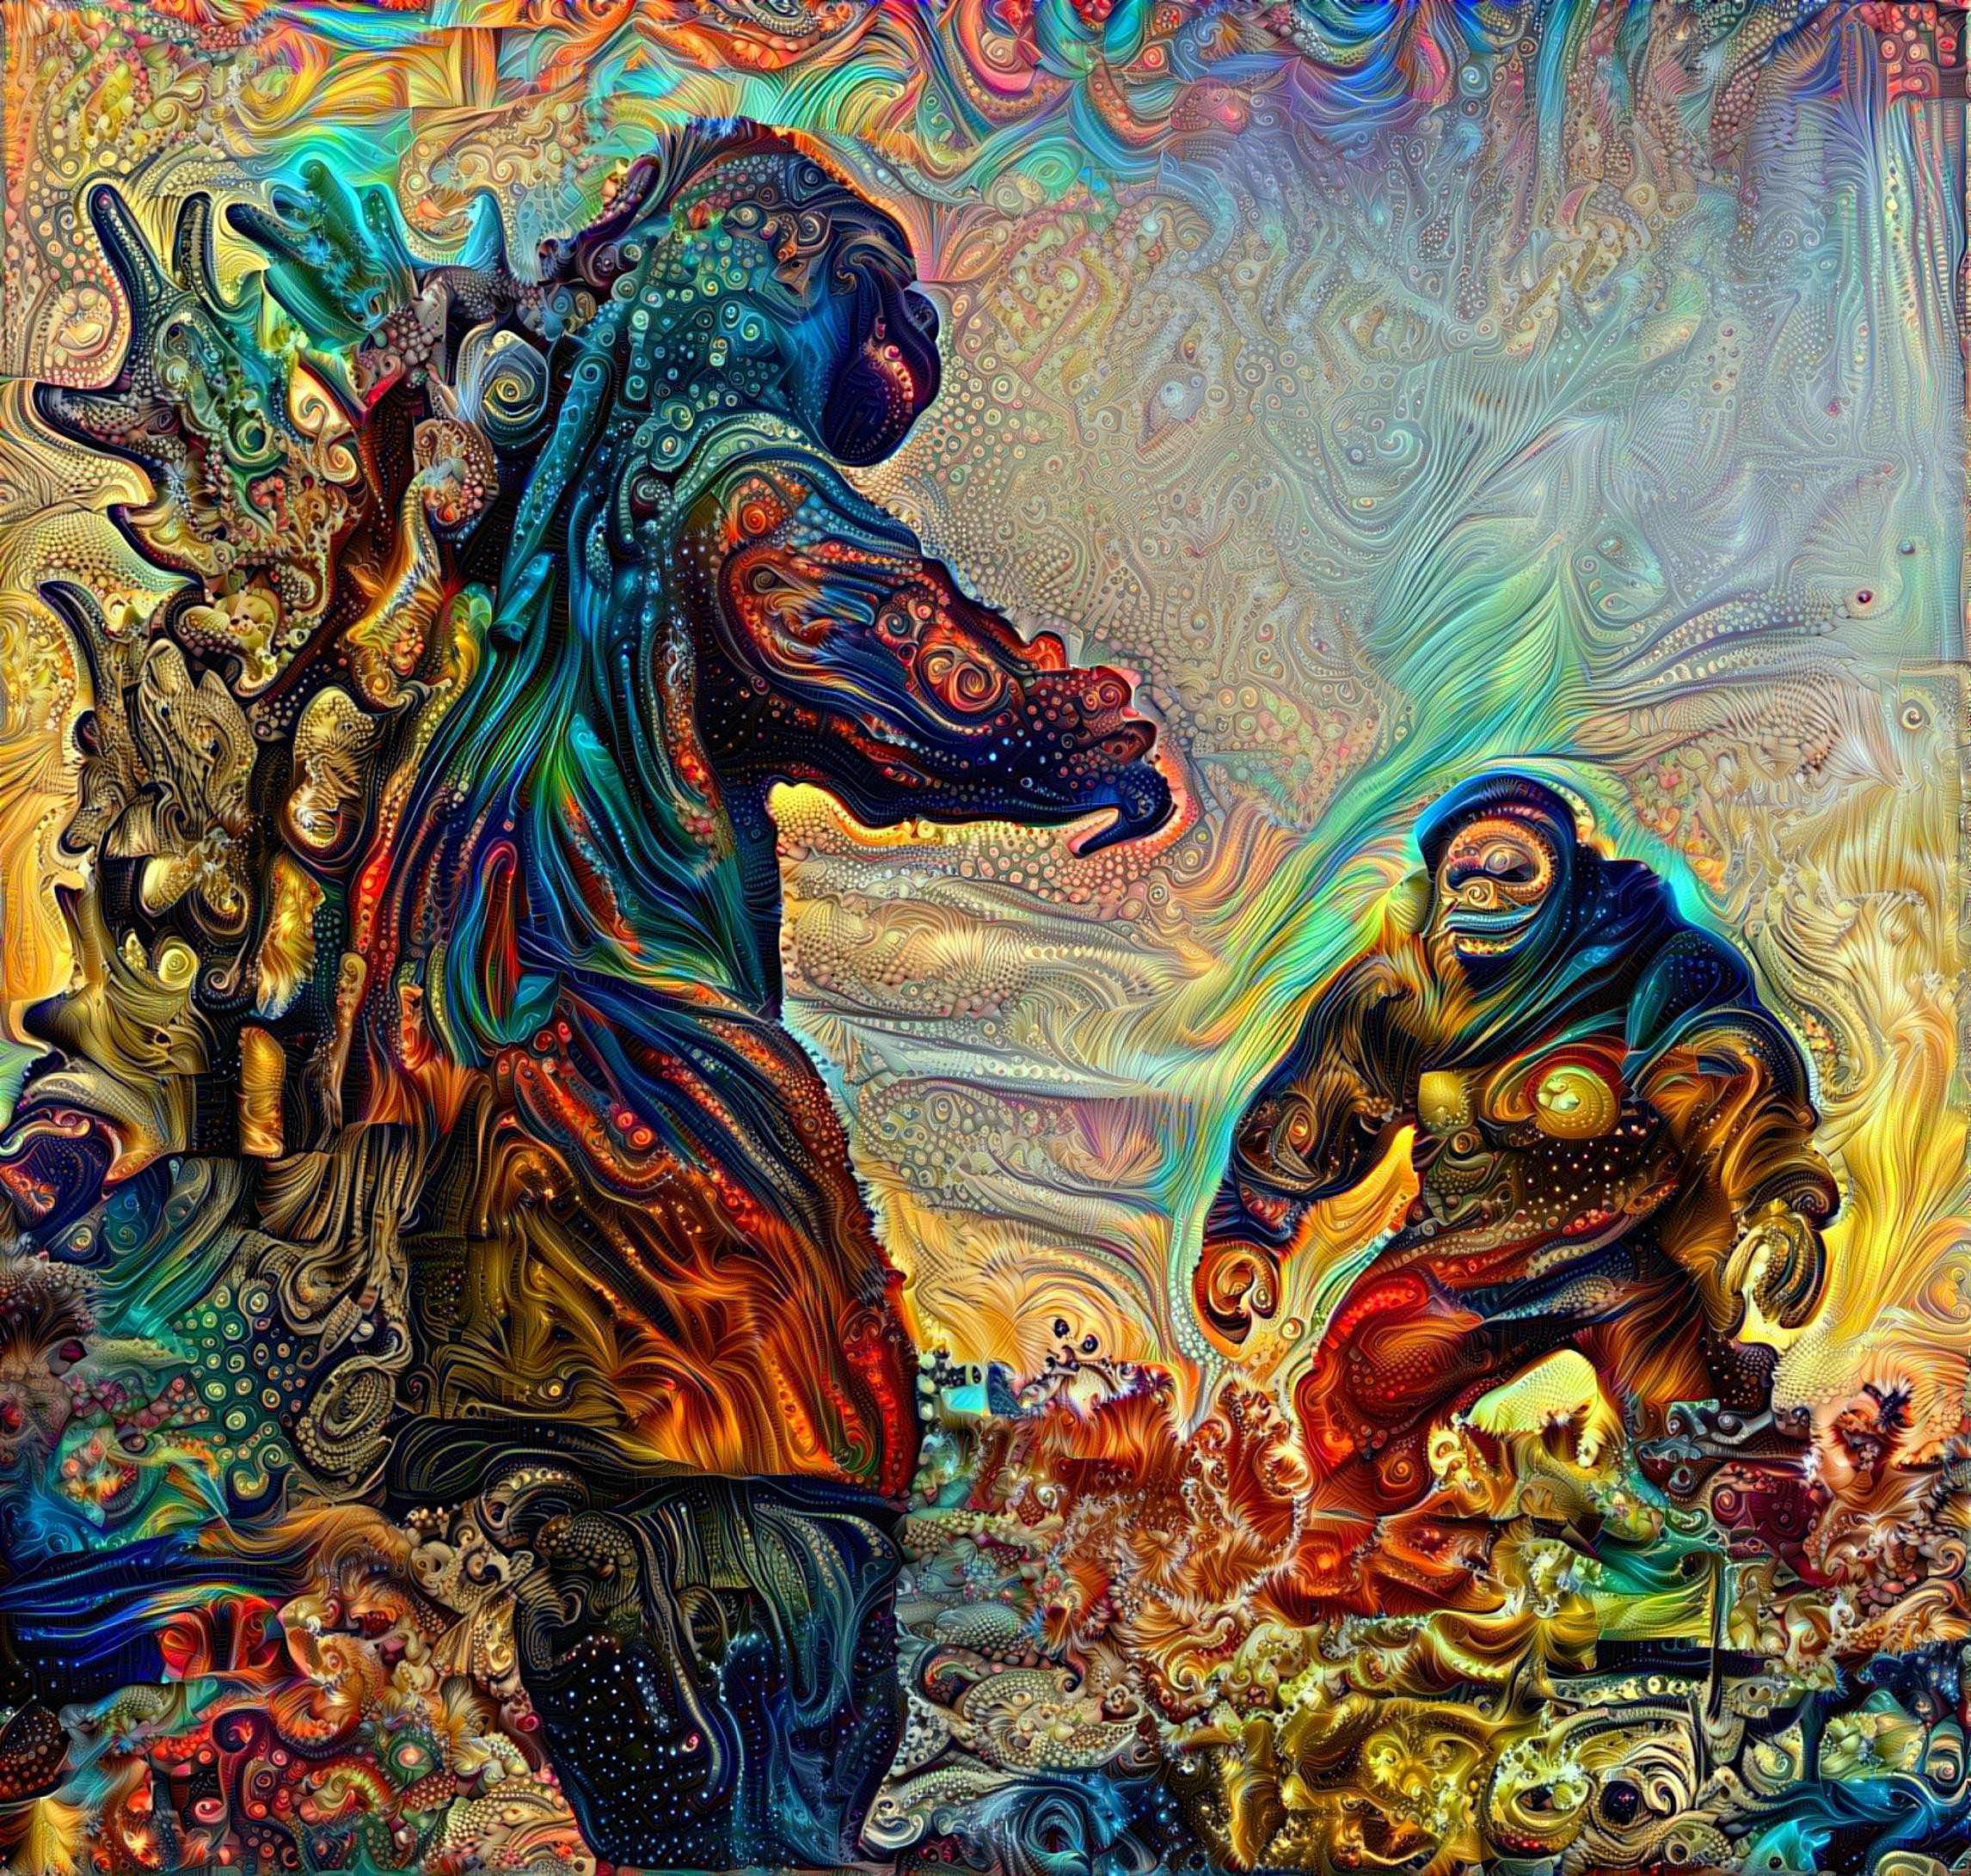 Zilla vs Kong